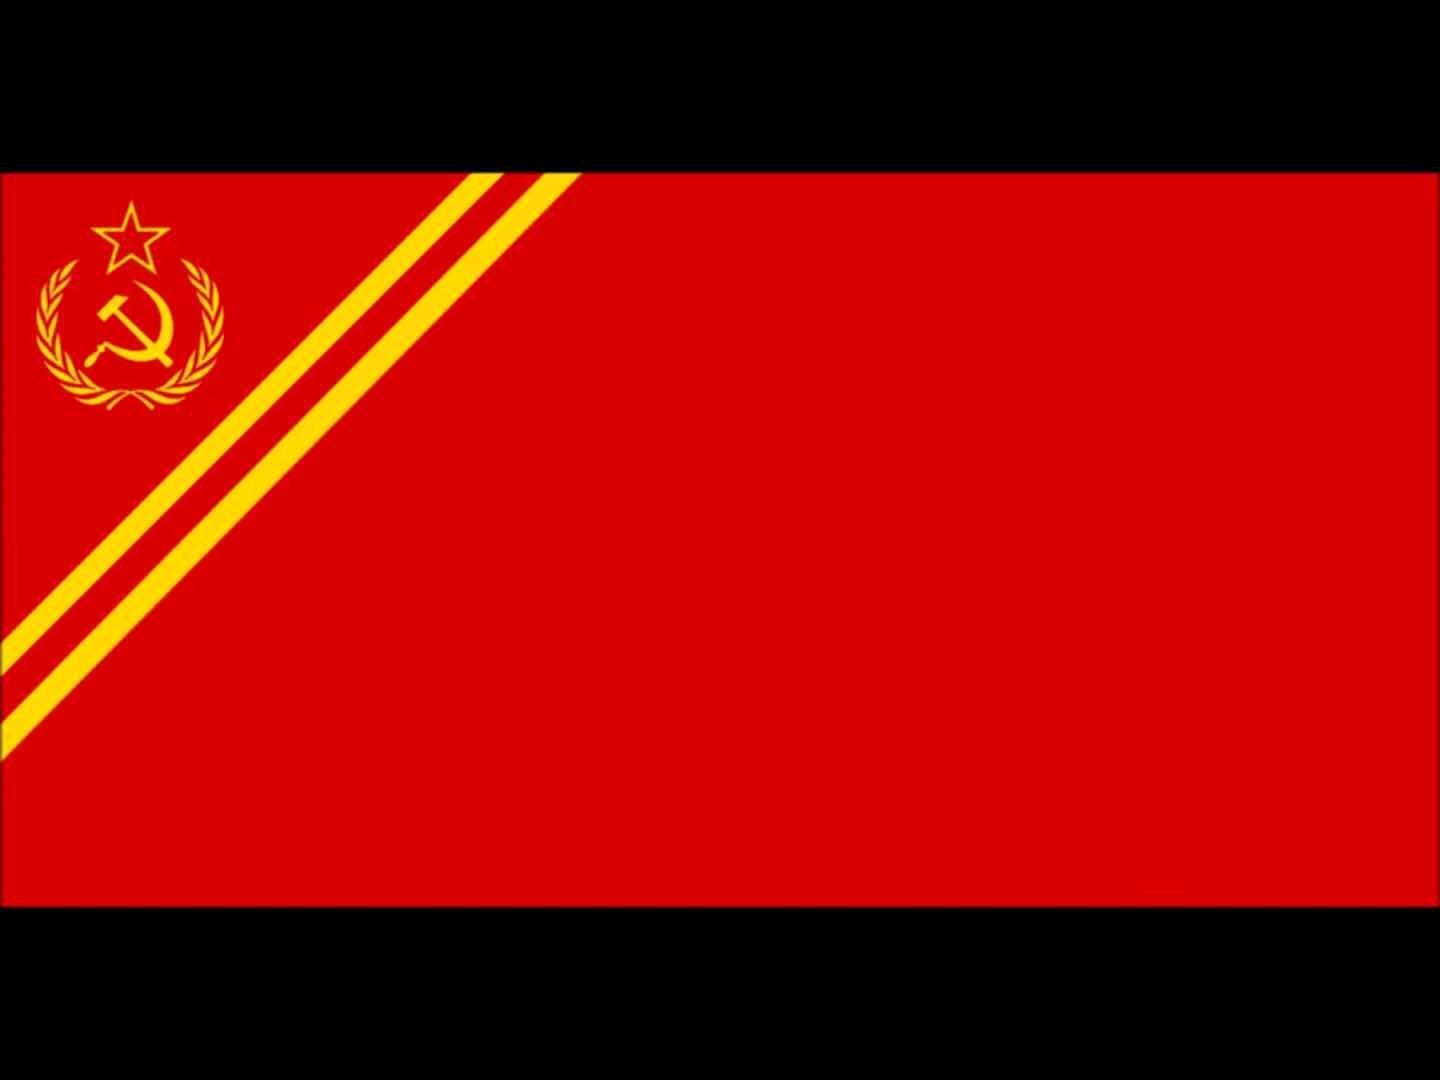 虚构新苏联国旗,现共产国际旗帜